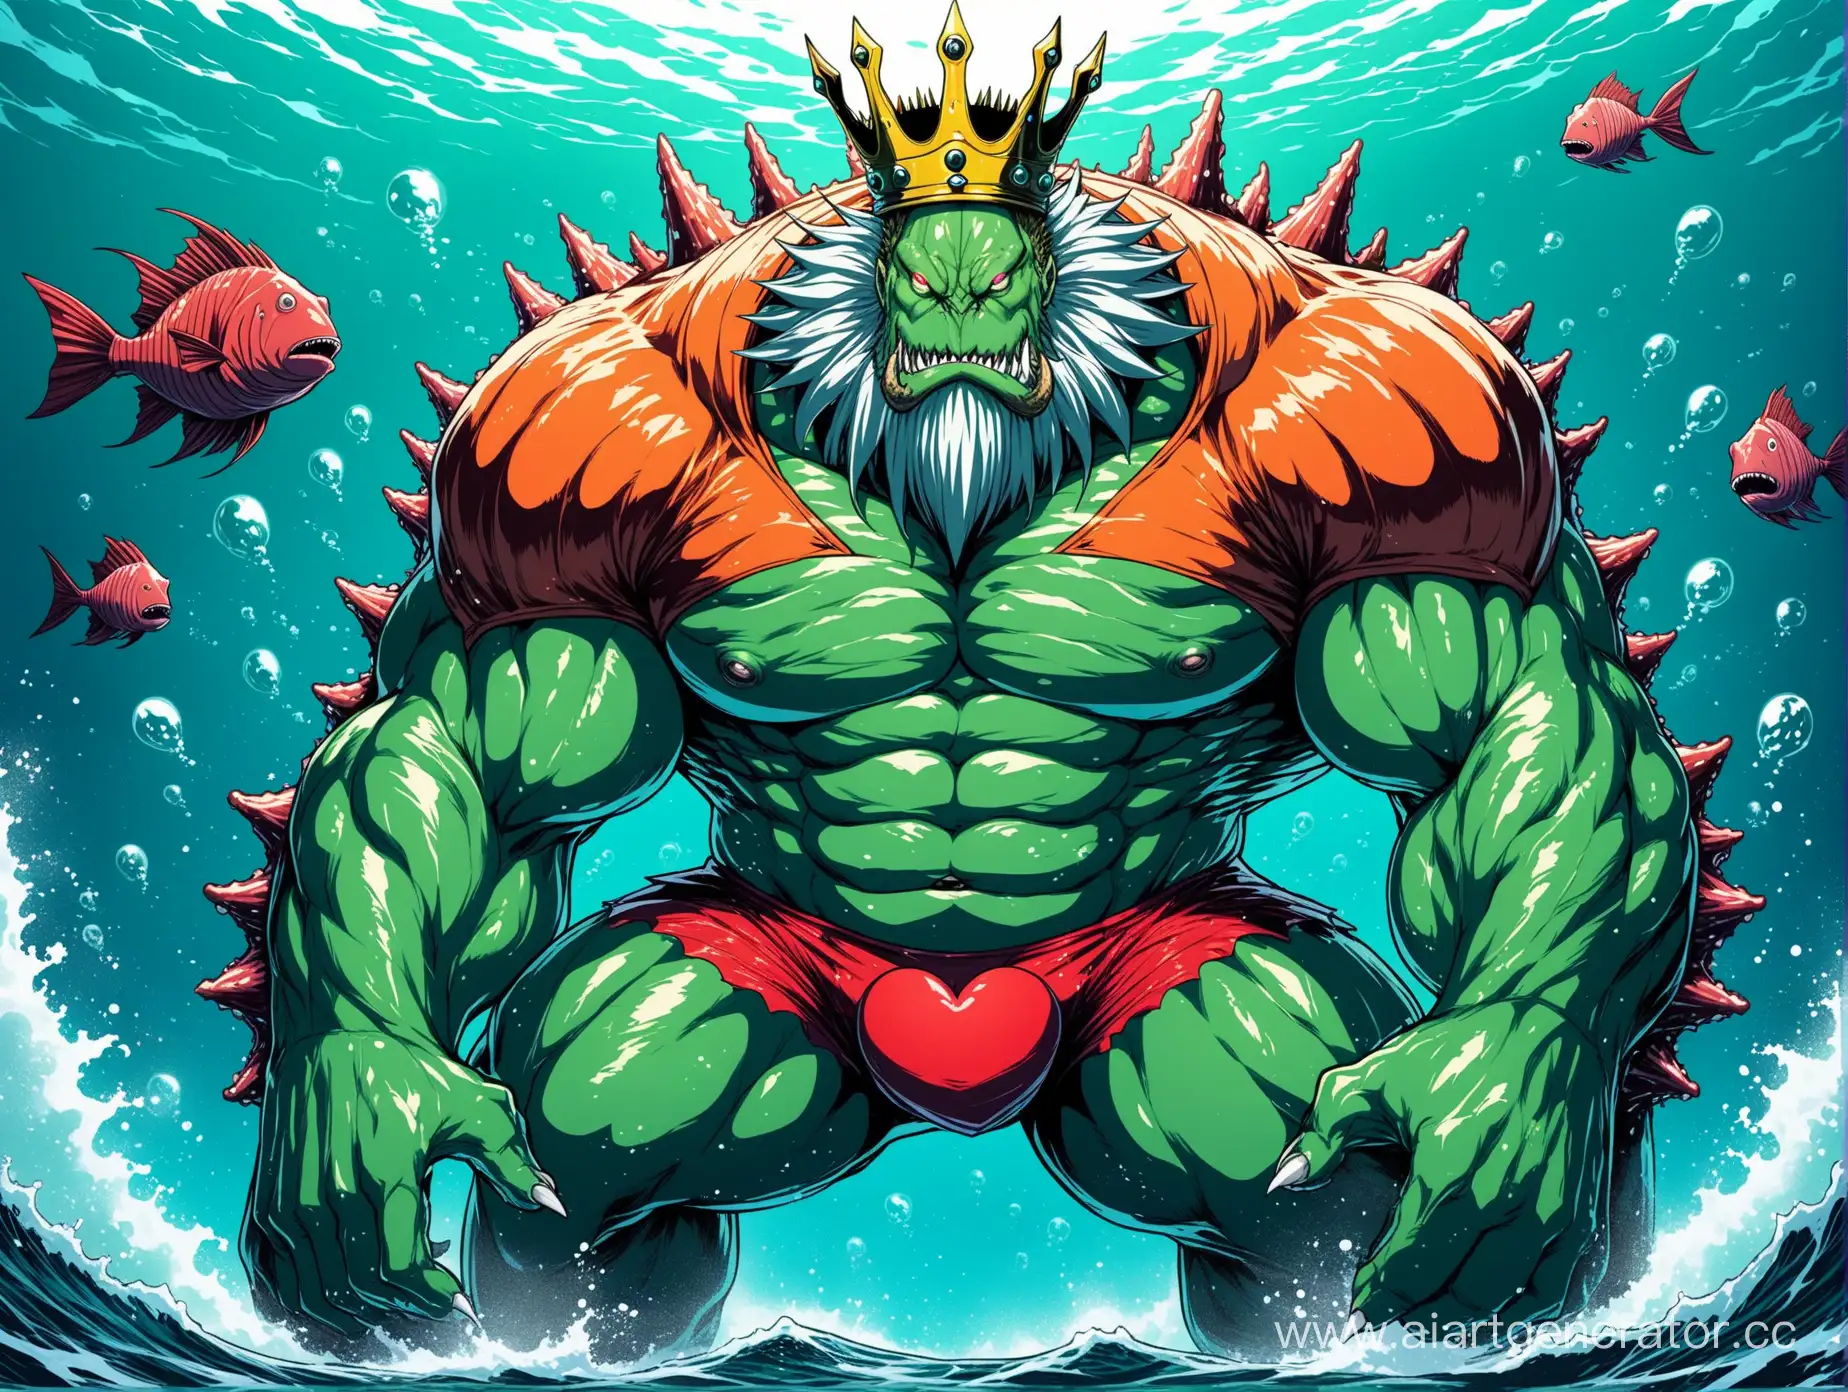 Морской король из OnePunchMan, монстр, гигантский, огромные мускулы, голова удильщика, зелёная кожа, корона, сердца на груди, белая грудь, красные трусы.